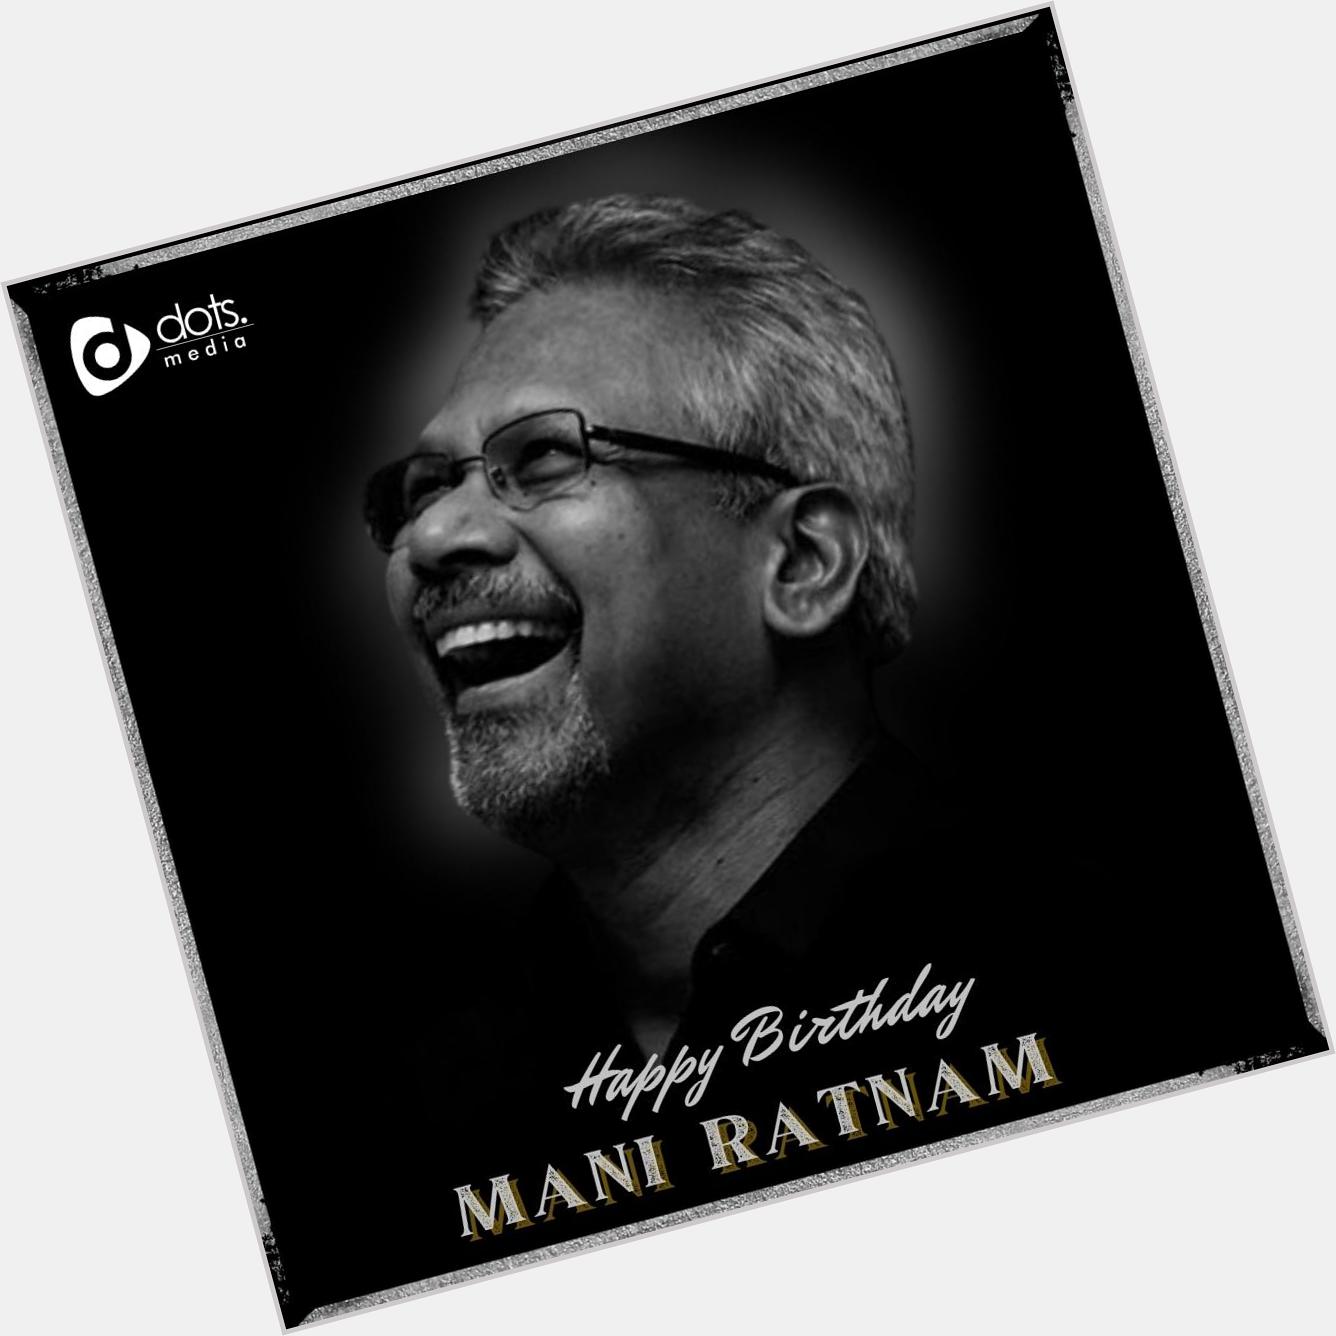 Happy Birthday Mani Ratnam    